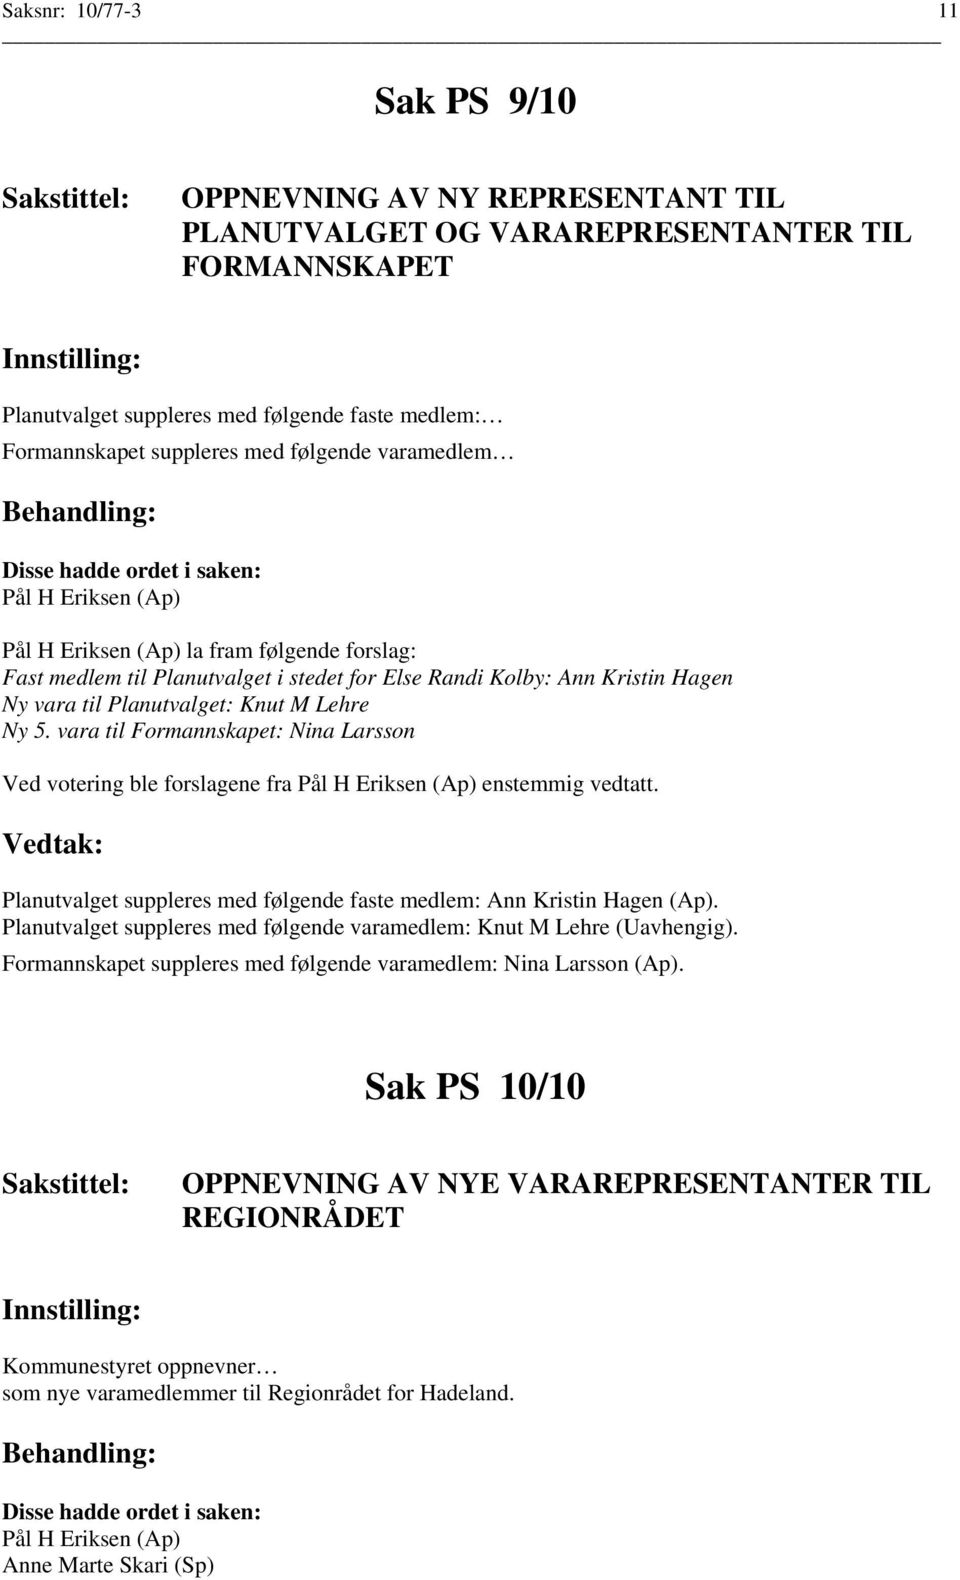 Lehre Ny 5. vara til Formannskapet: Nina Larsson Ved votering ble forslagene fra Pål H Eriksen (Ap) enstemmig vedtatt. Planutvalget suppleres med følgende faste medlem: Ann Kristin Hagen (Ap).